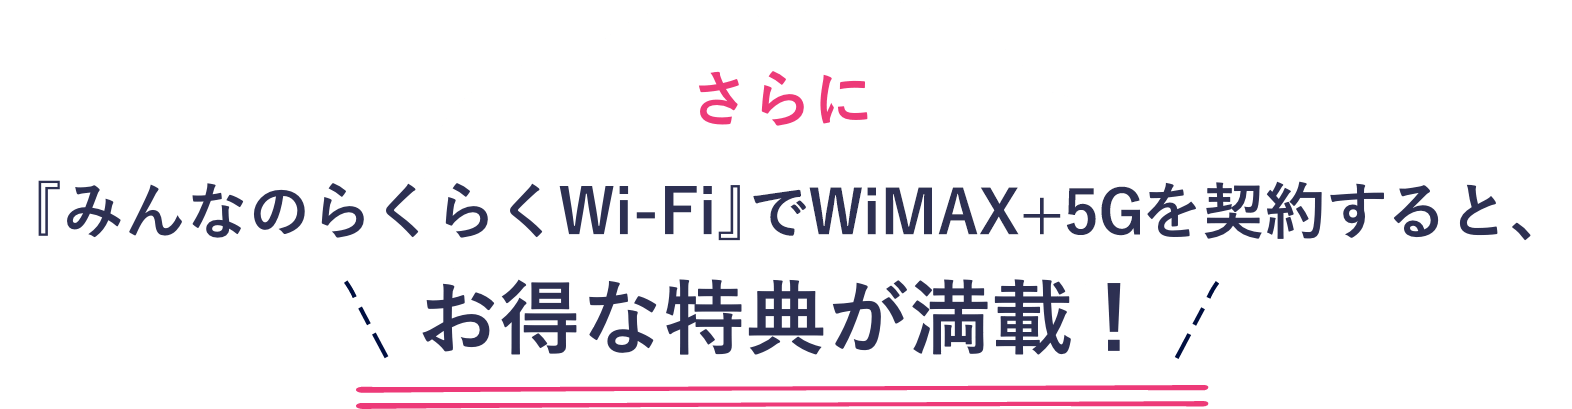 WiMAX+5G 契約 キャンペーン